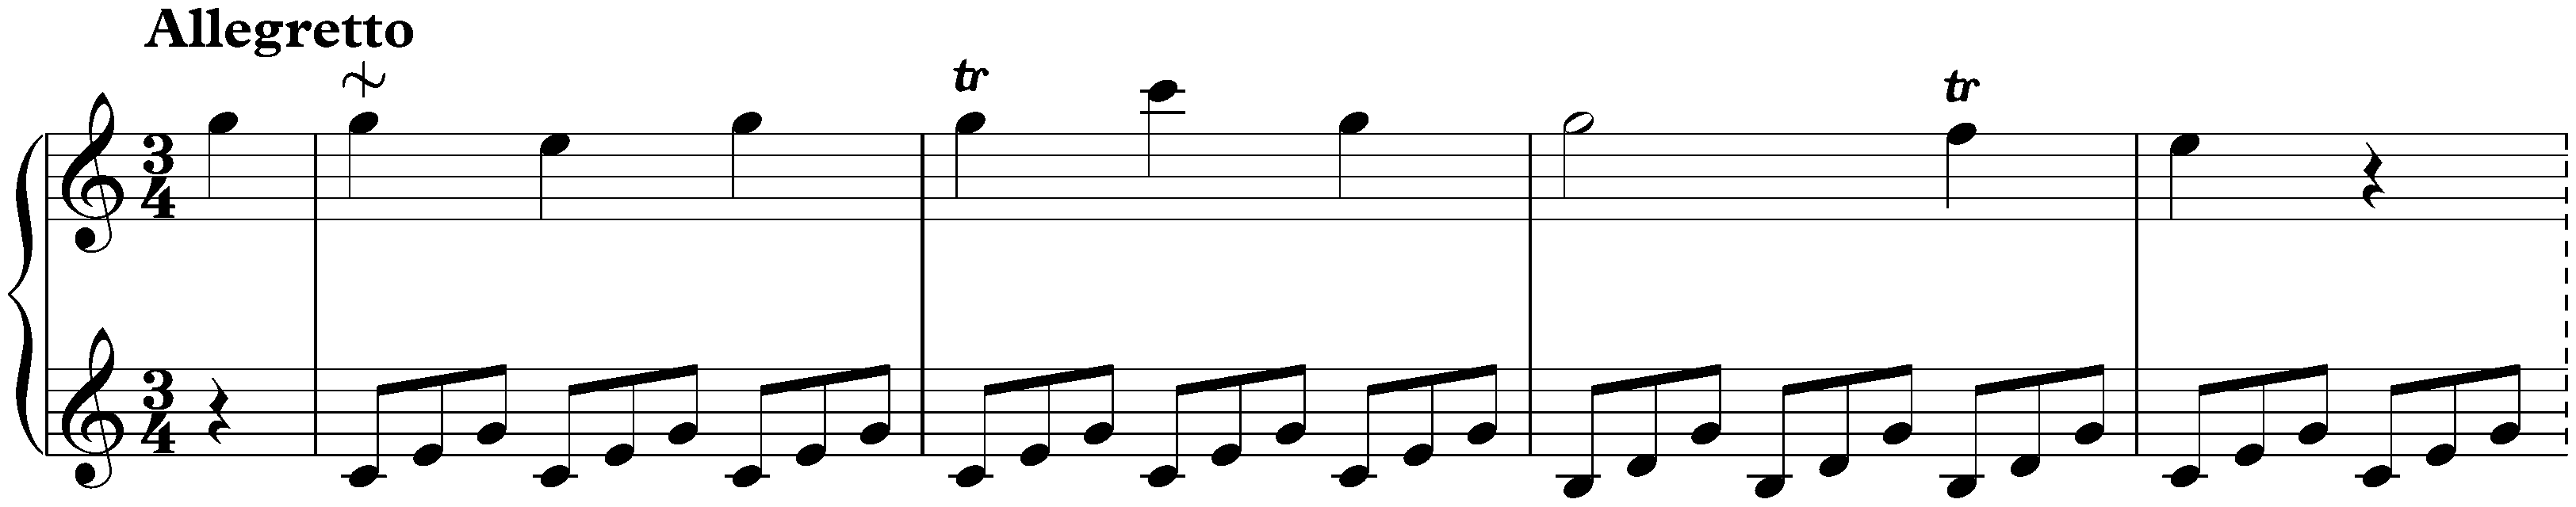 Sonata in C major, Hob. XVI:3; 1. Allegretto